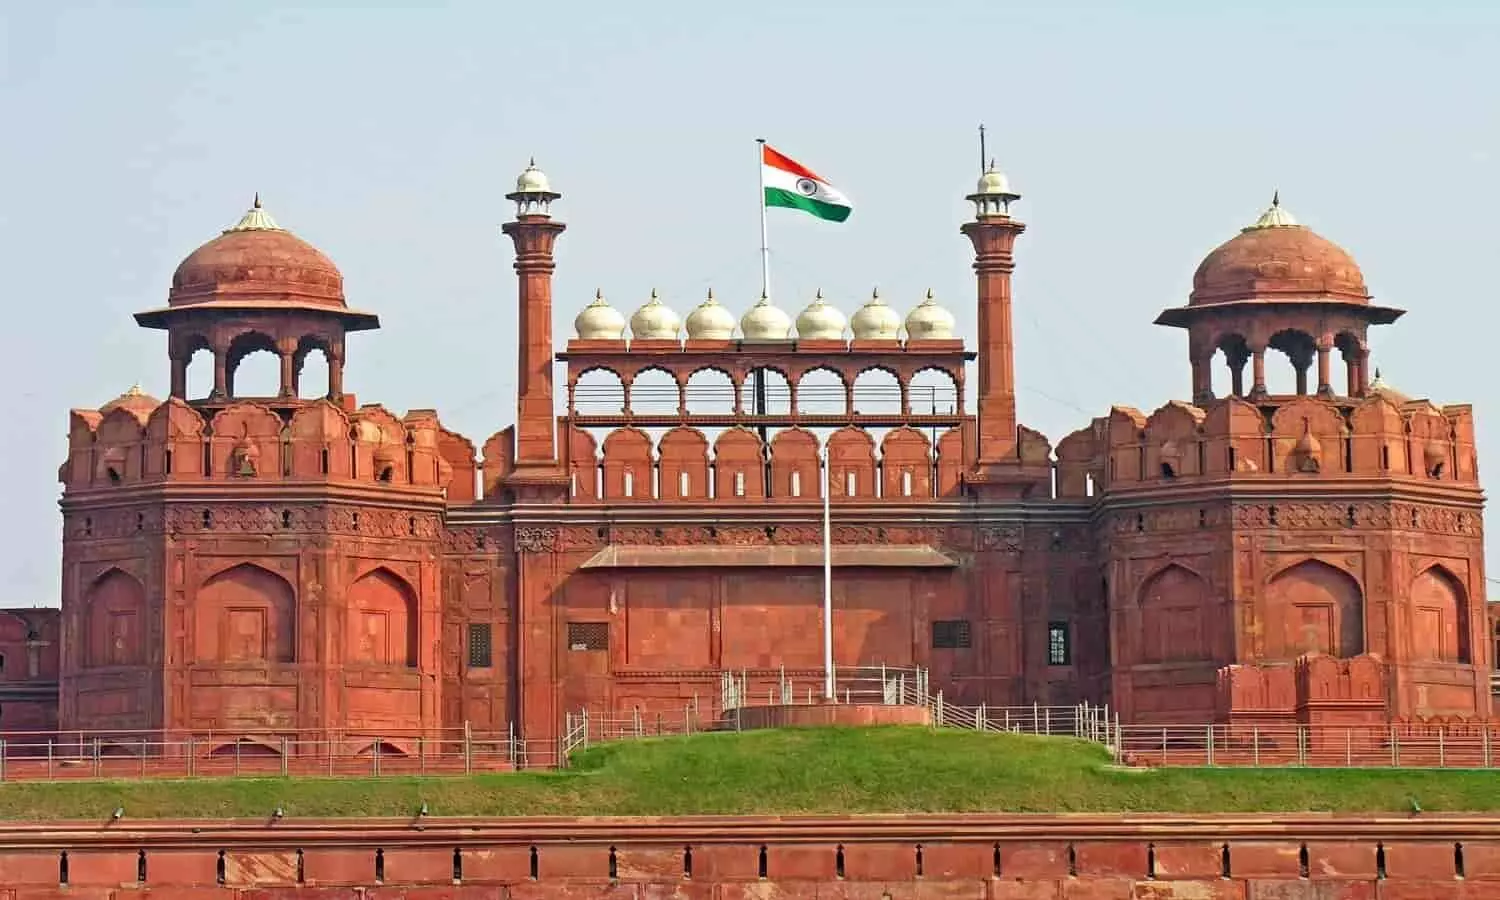 15 अगस्त को परिंदा भी पर नहीं मार सकेगा, लाल किले की सुरक्षा में व्यवस्थाएं दुरुस्त, दिल्ली में ये काम करने से बचें